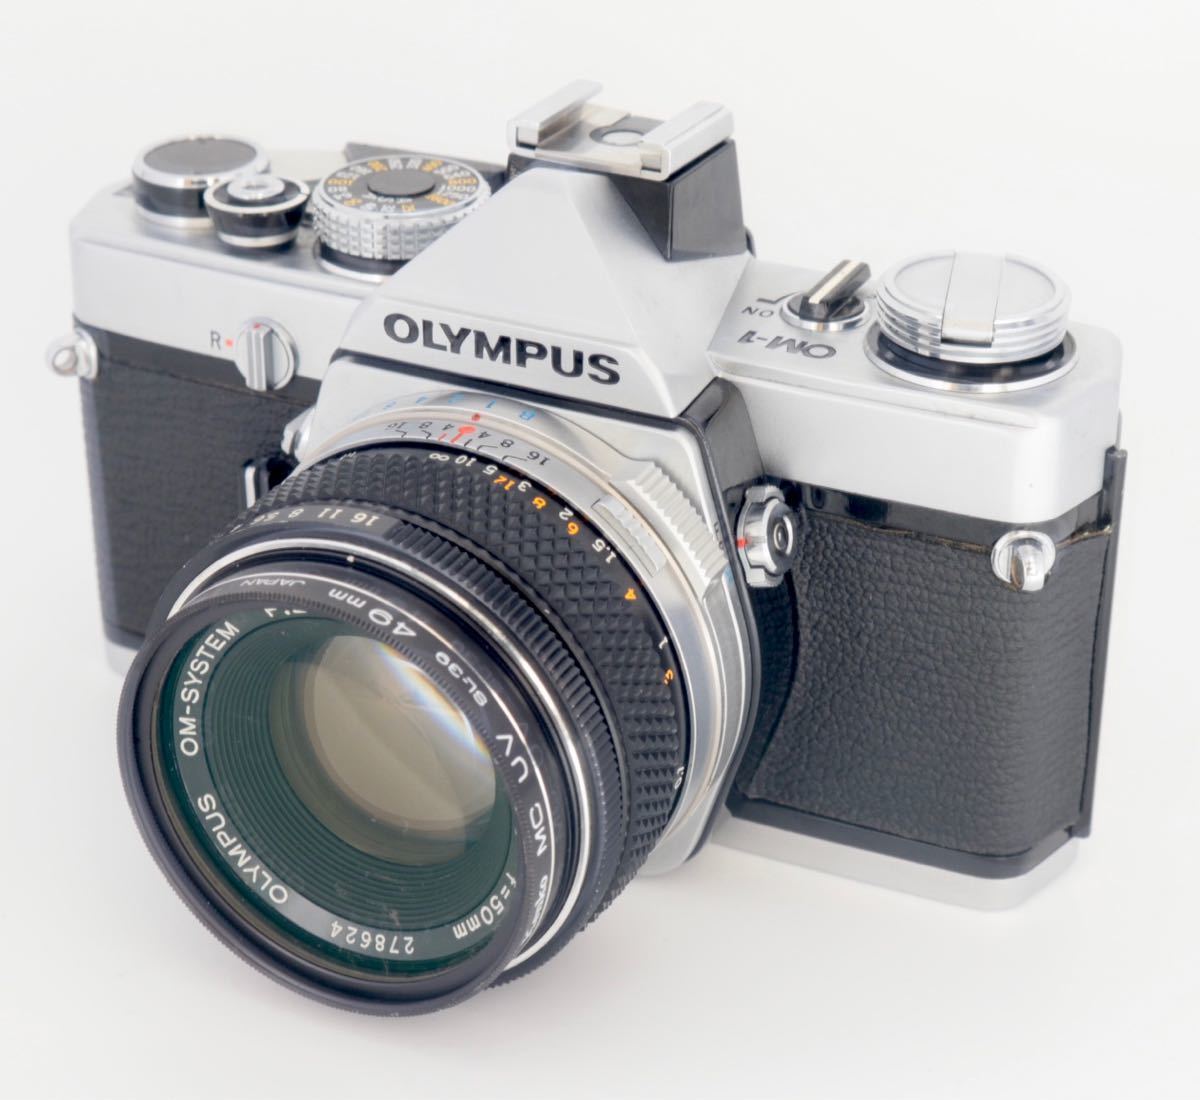 OLYMPUS OM-1 F.ZUIKO S50mmF1.8 露出計注意#07 フィルムカメラ 一眼レフカメラ -  duasisimoneychanger.co.id